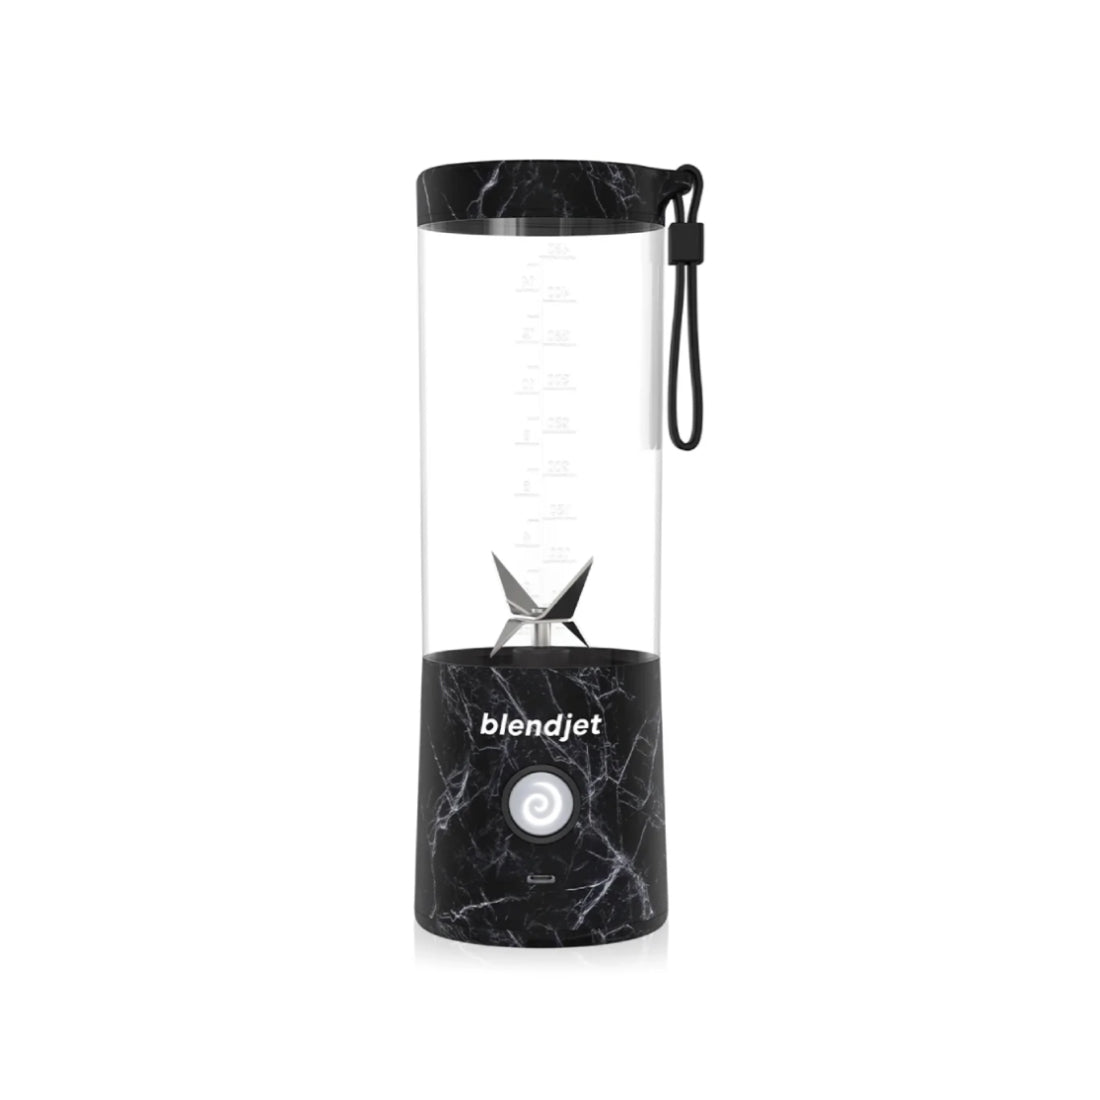 BlendJet 2 Portable Blender - Black Marble - خلاط